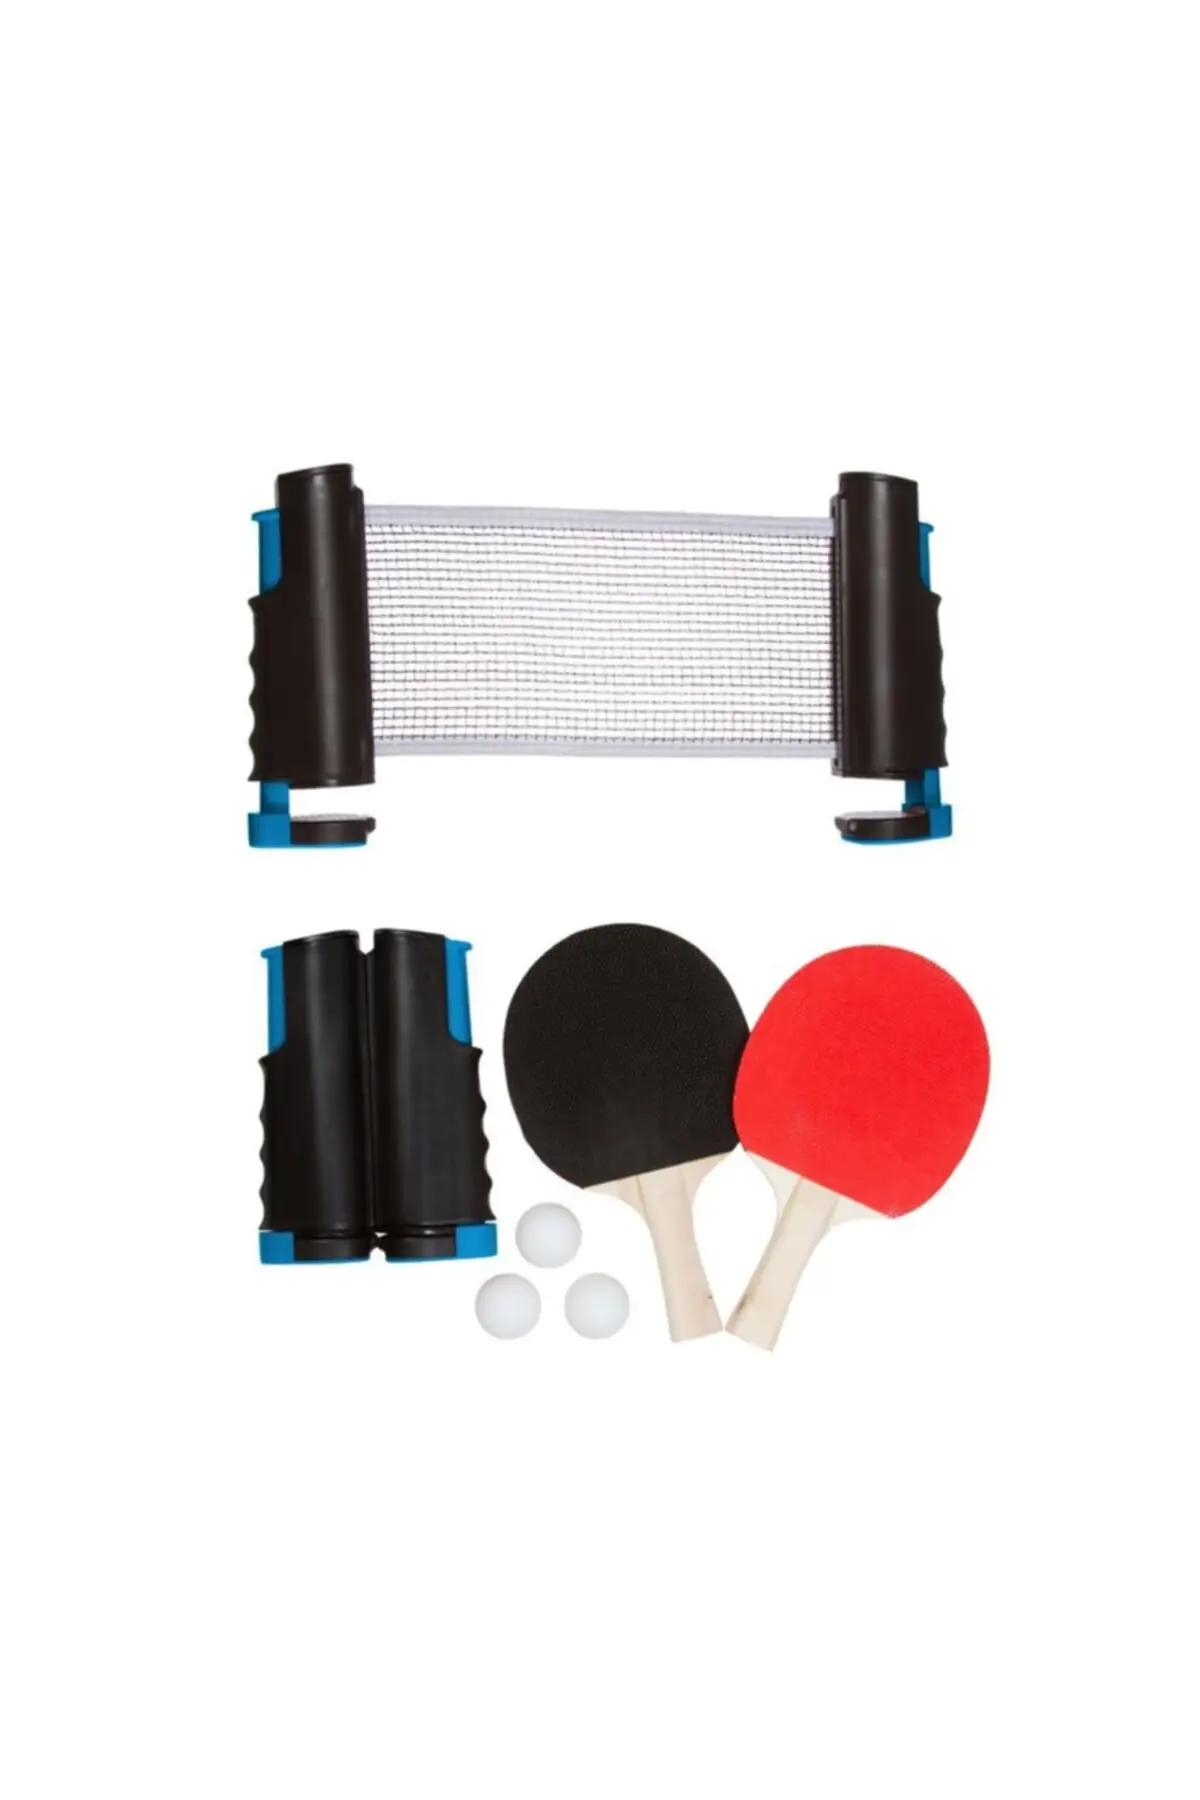 2'li Toplanabilir Table Tennis Net Racket Ball Set Kit Tennis Equipment & Accessory Outdoor